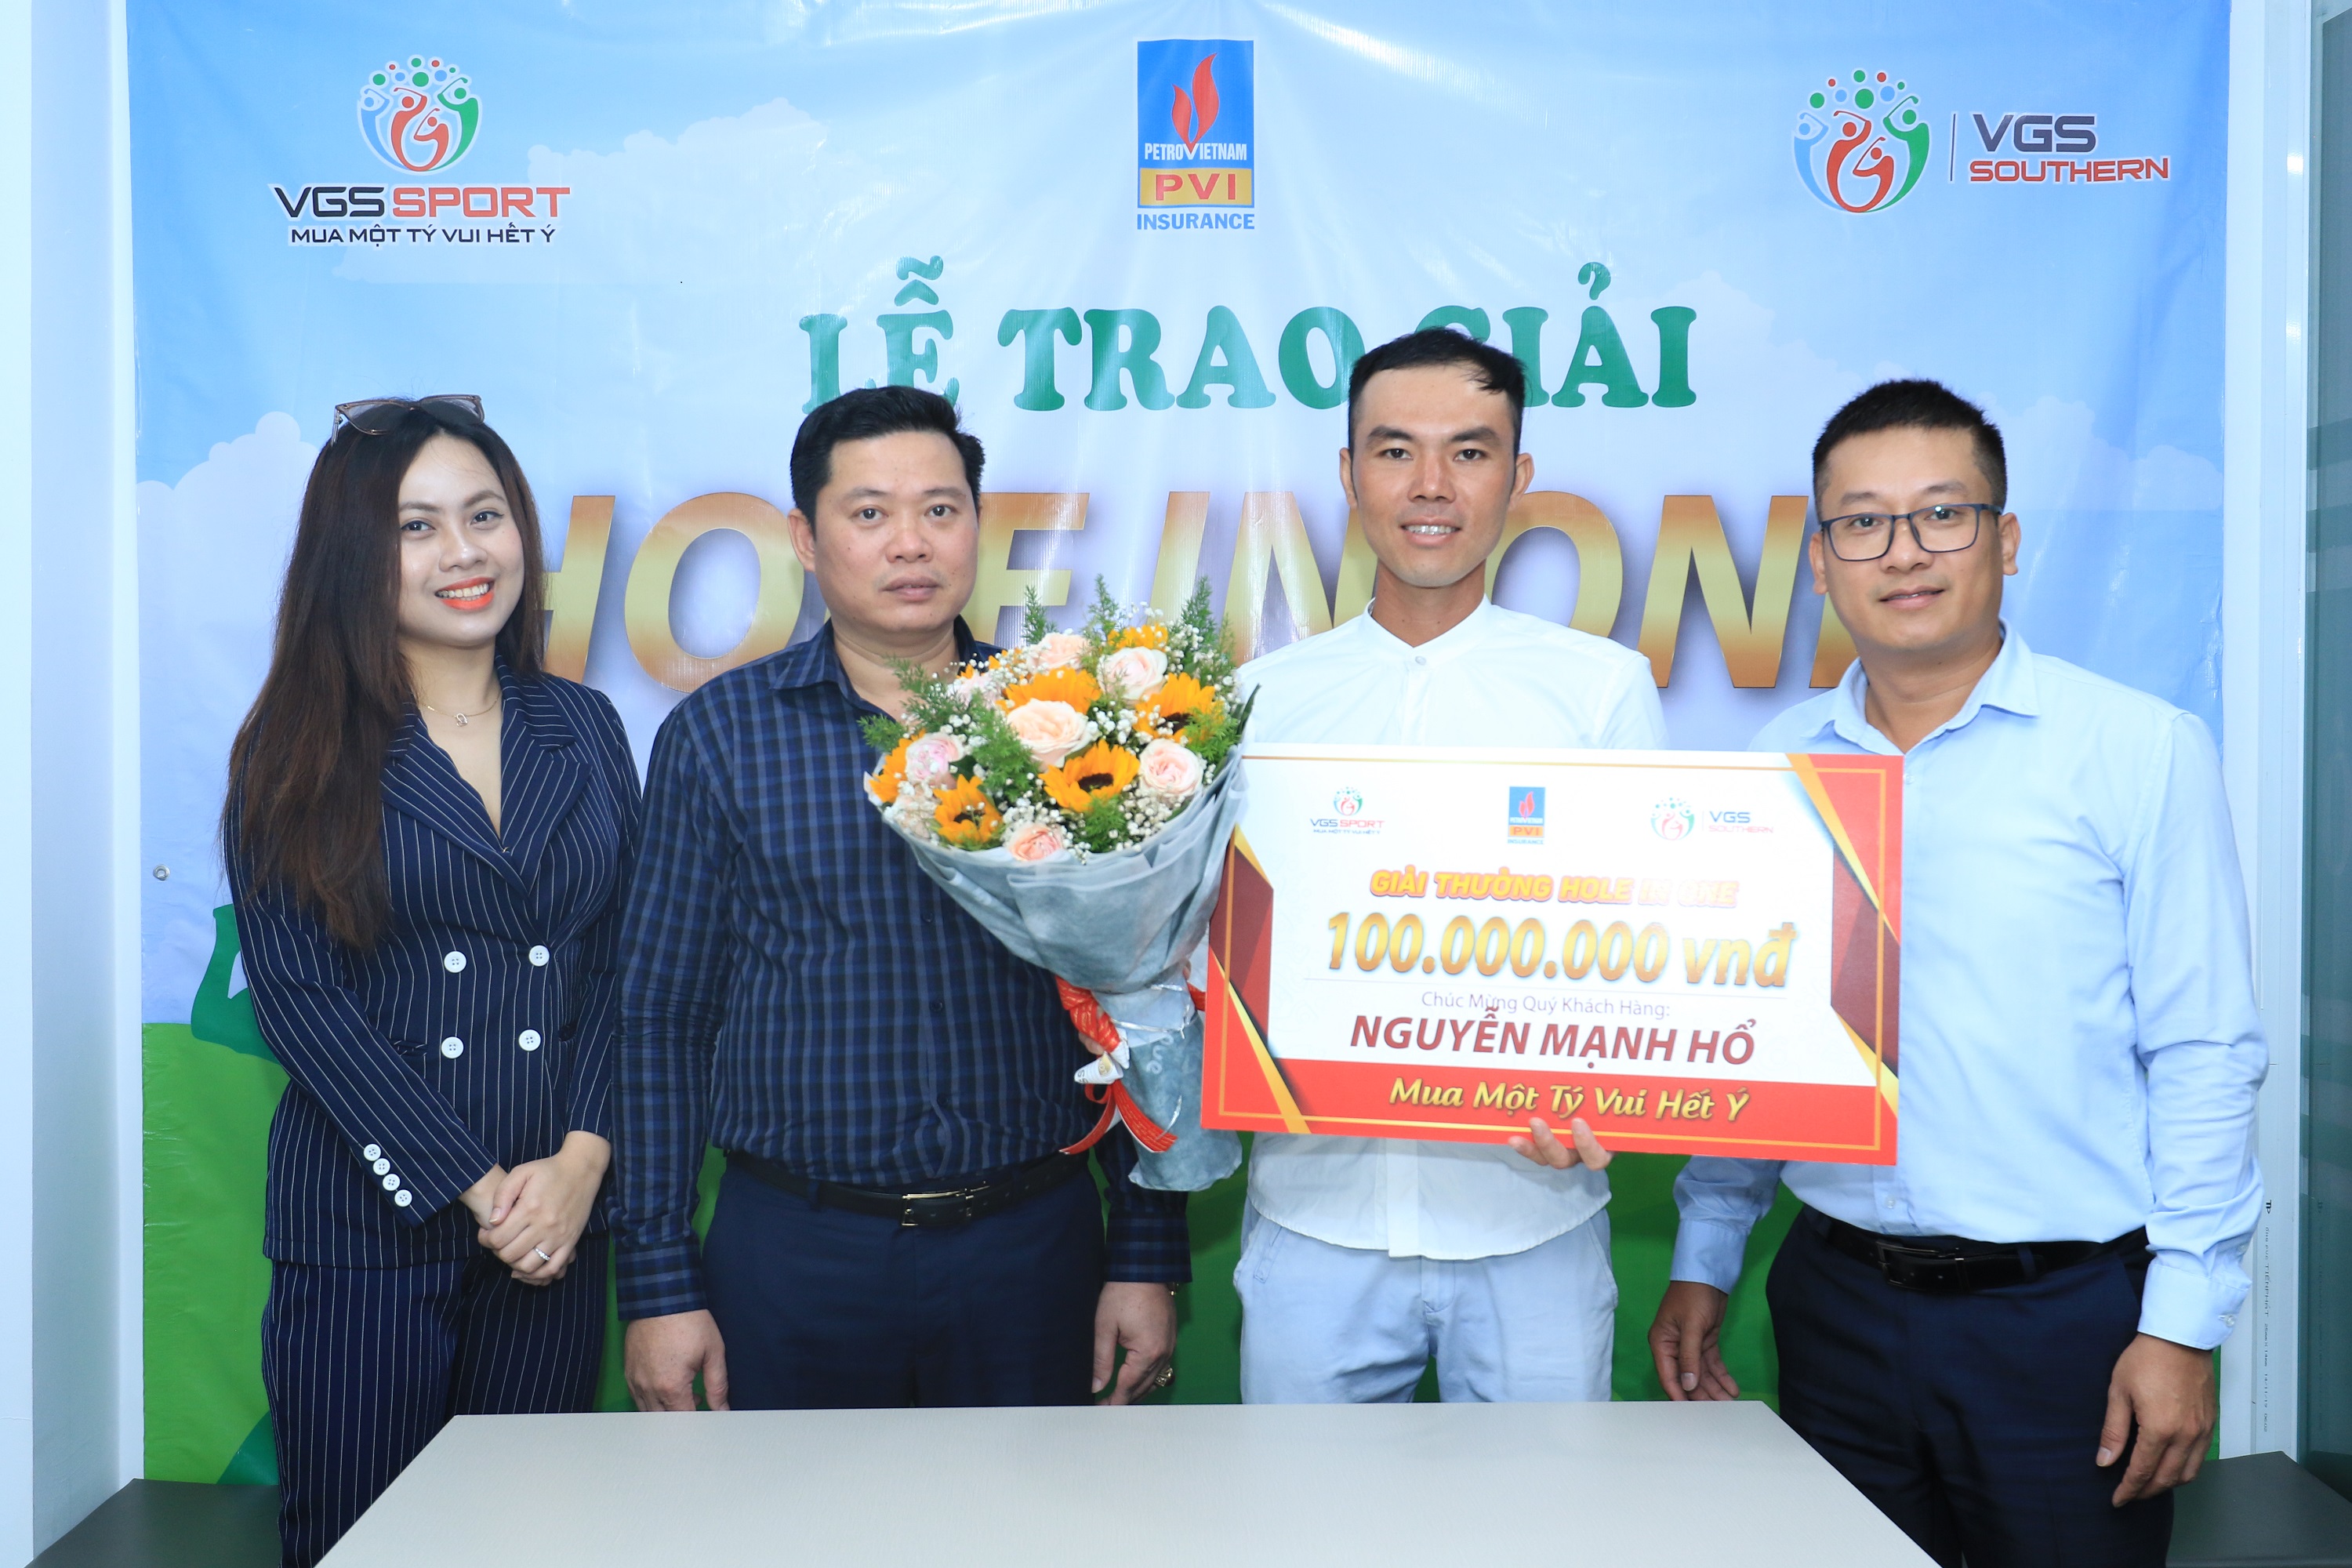 VGS Sport trao giải thưởng 100 triệu đồng cho golfer Nguyễn Mạnh Hổ